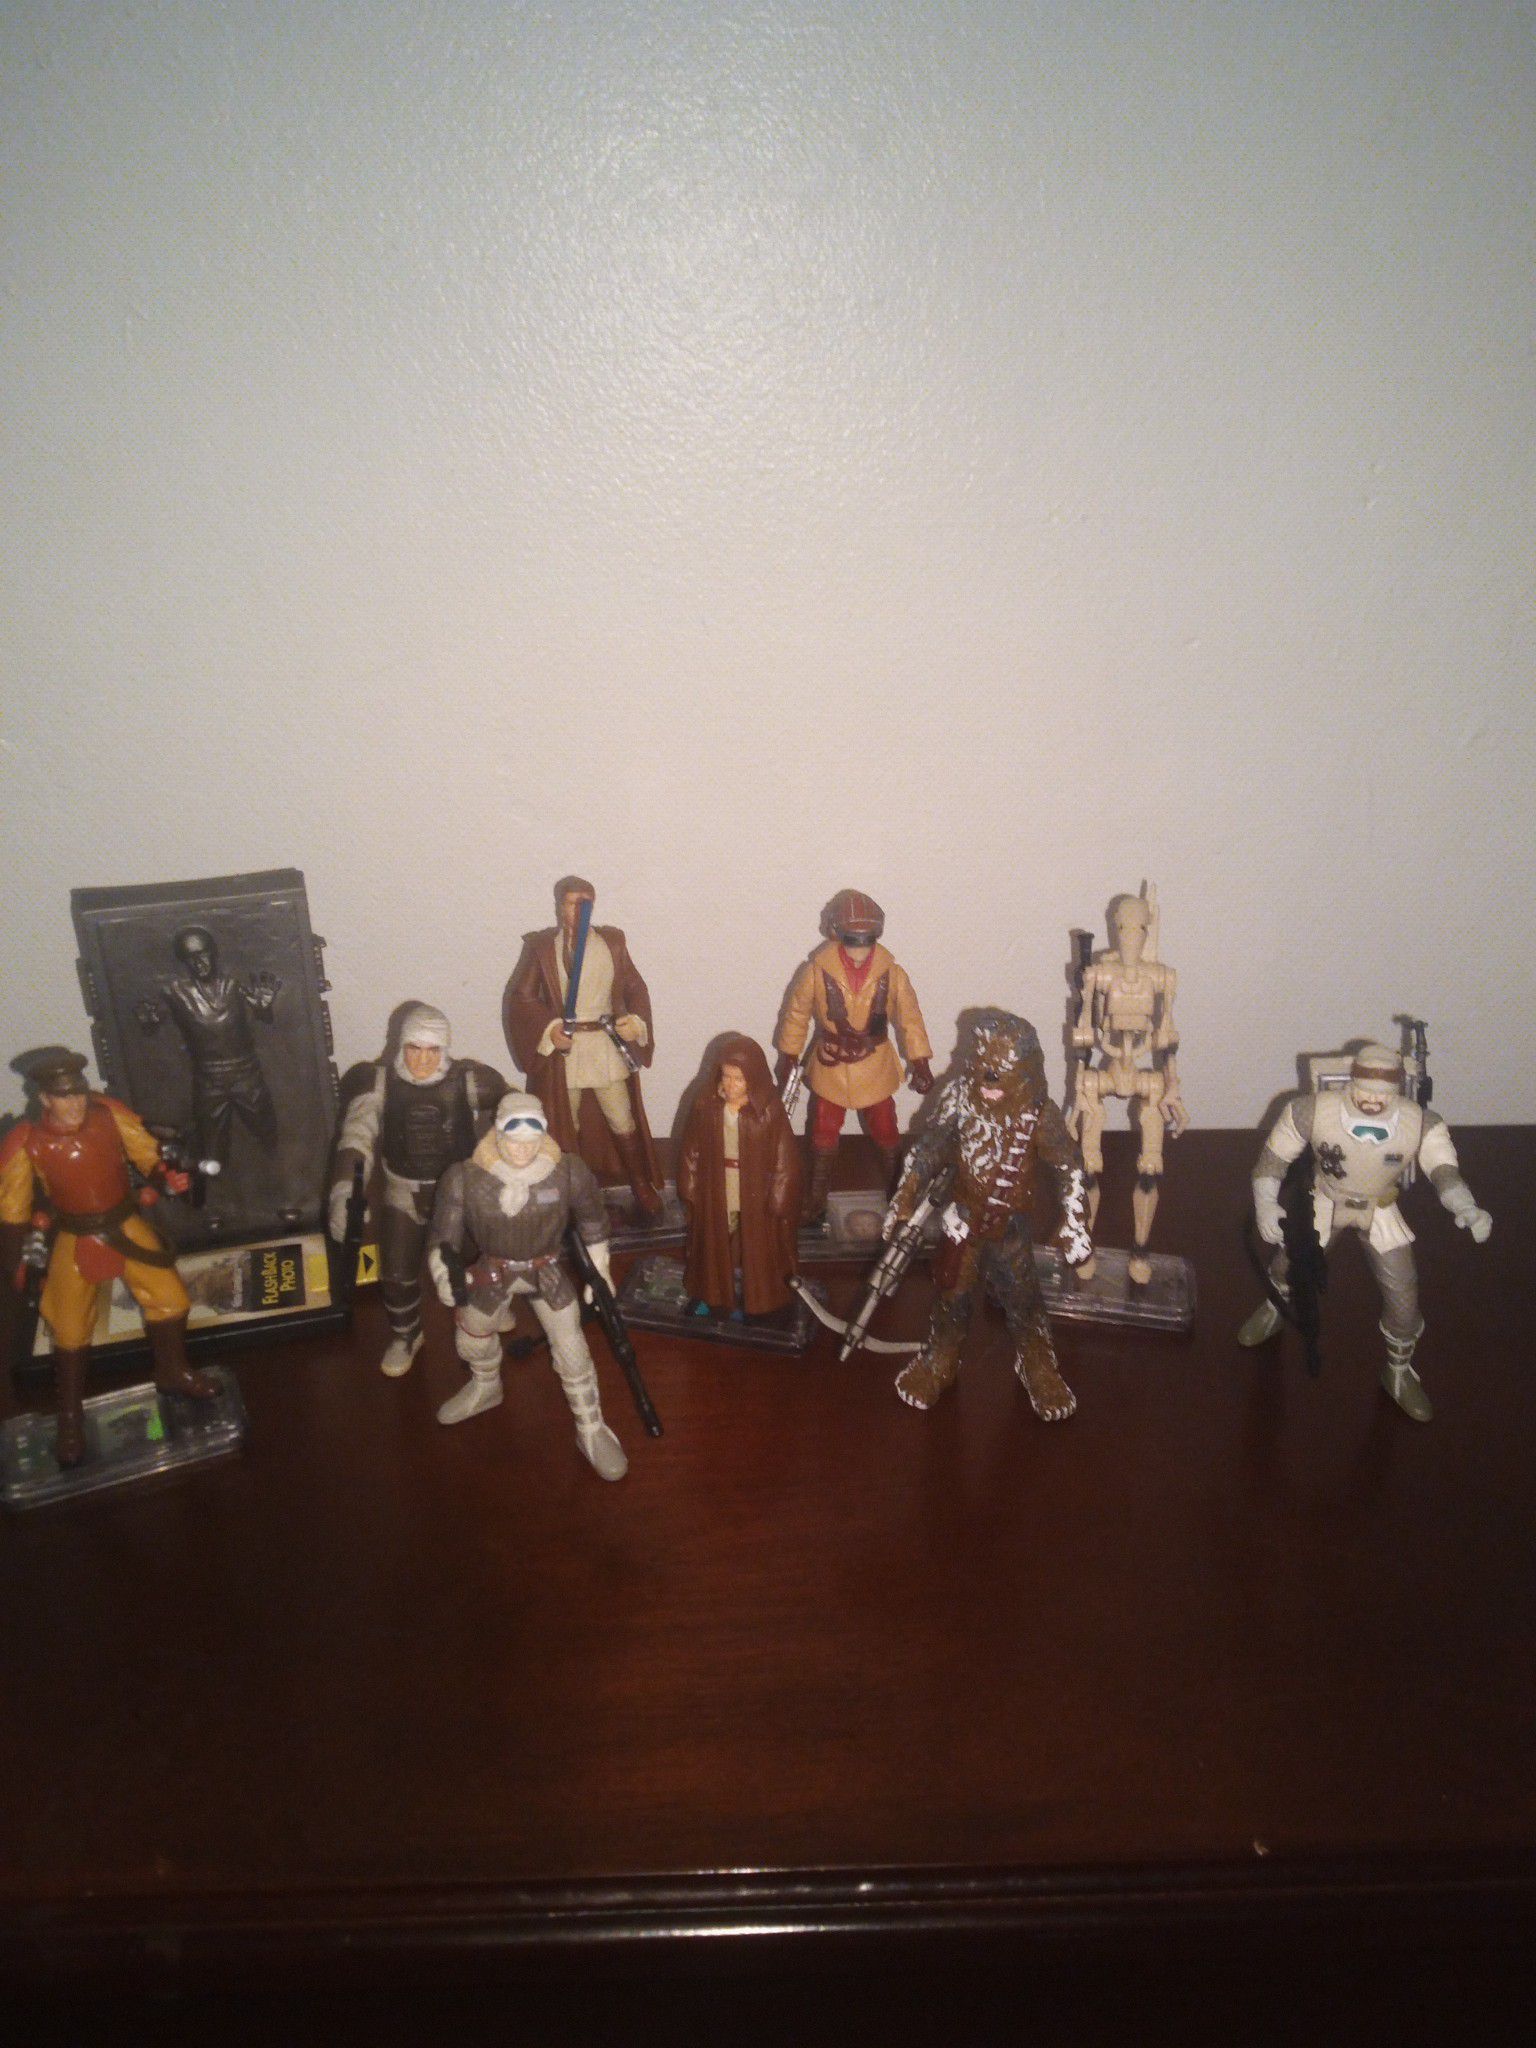 Star wars figures